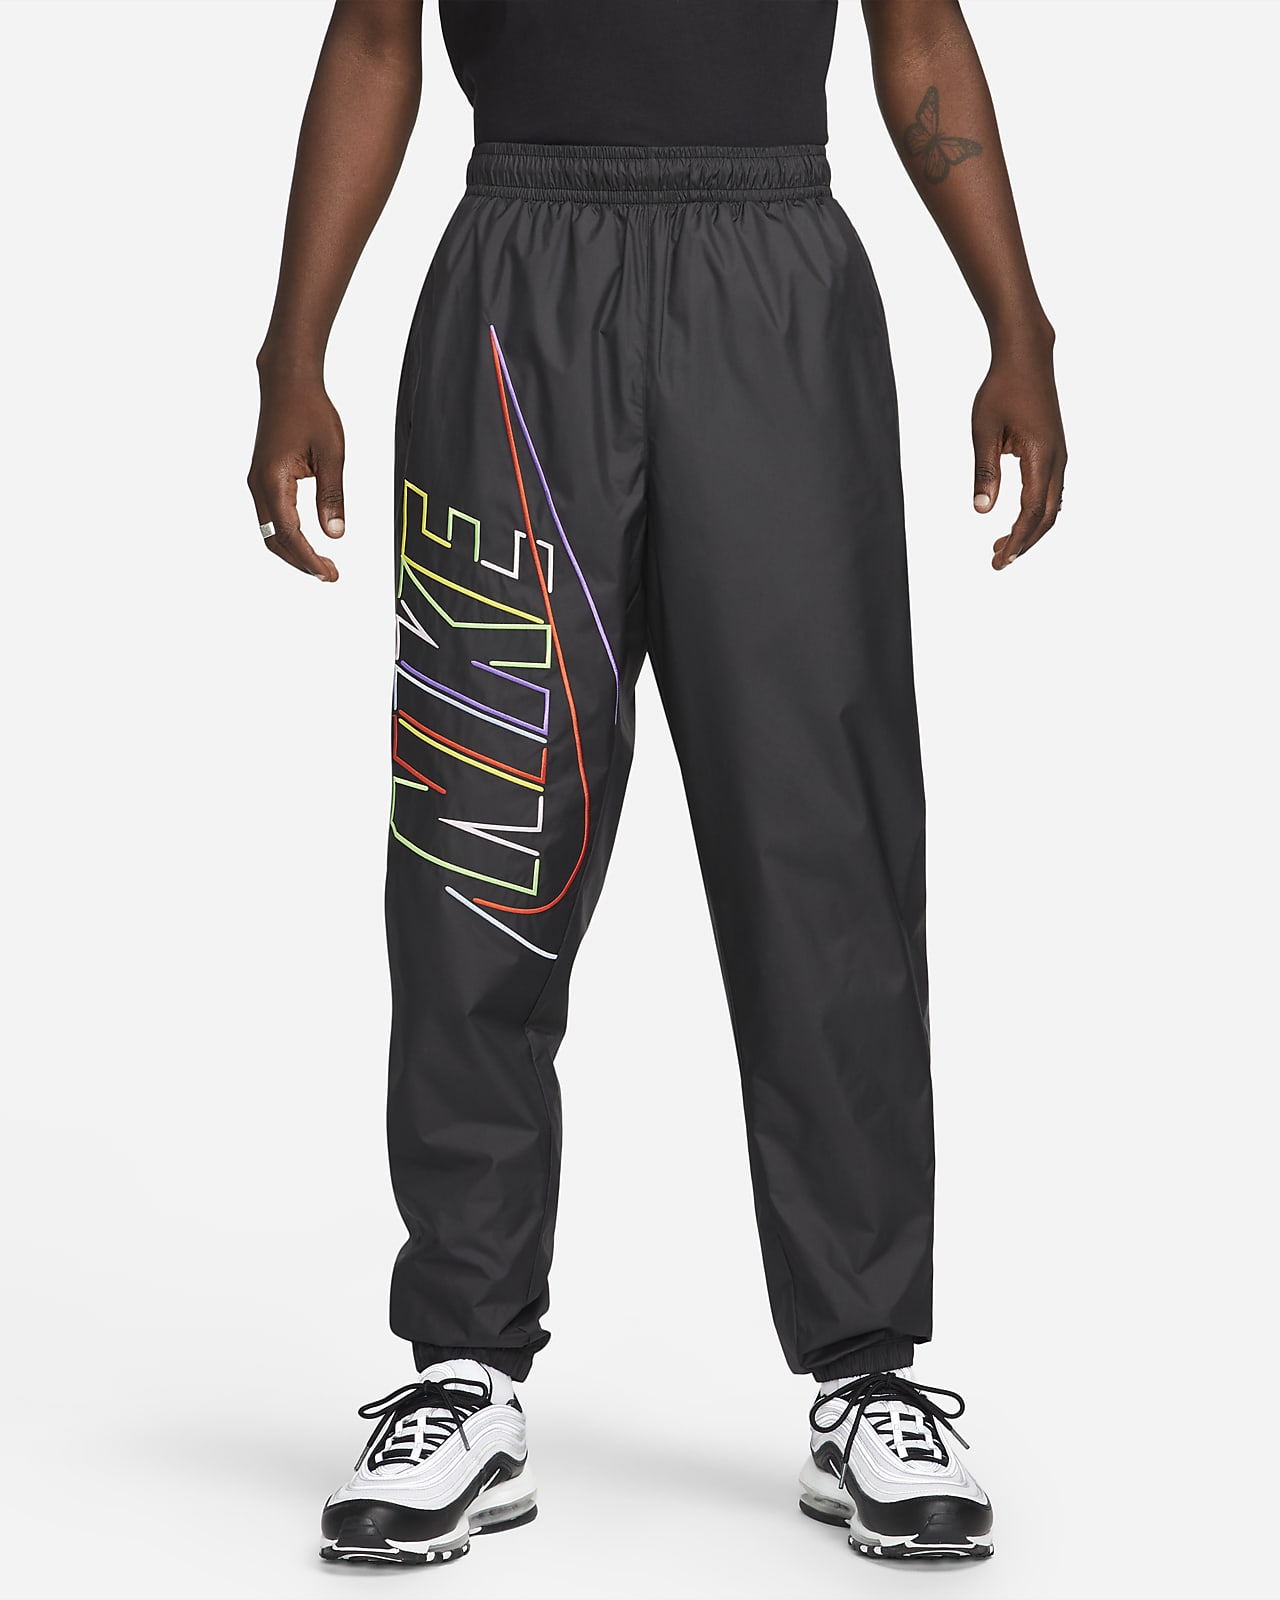 Nike men's nylon trackpants  Athletic outfits, Nylon pants, Nike men